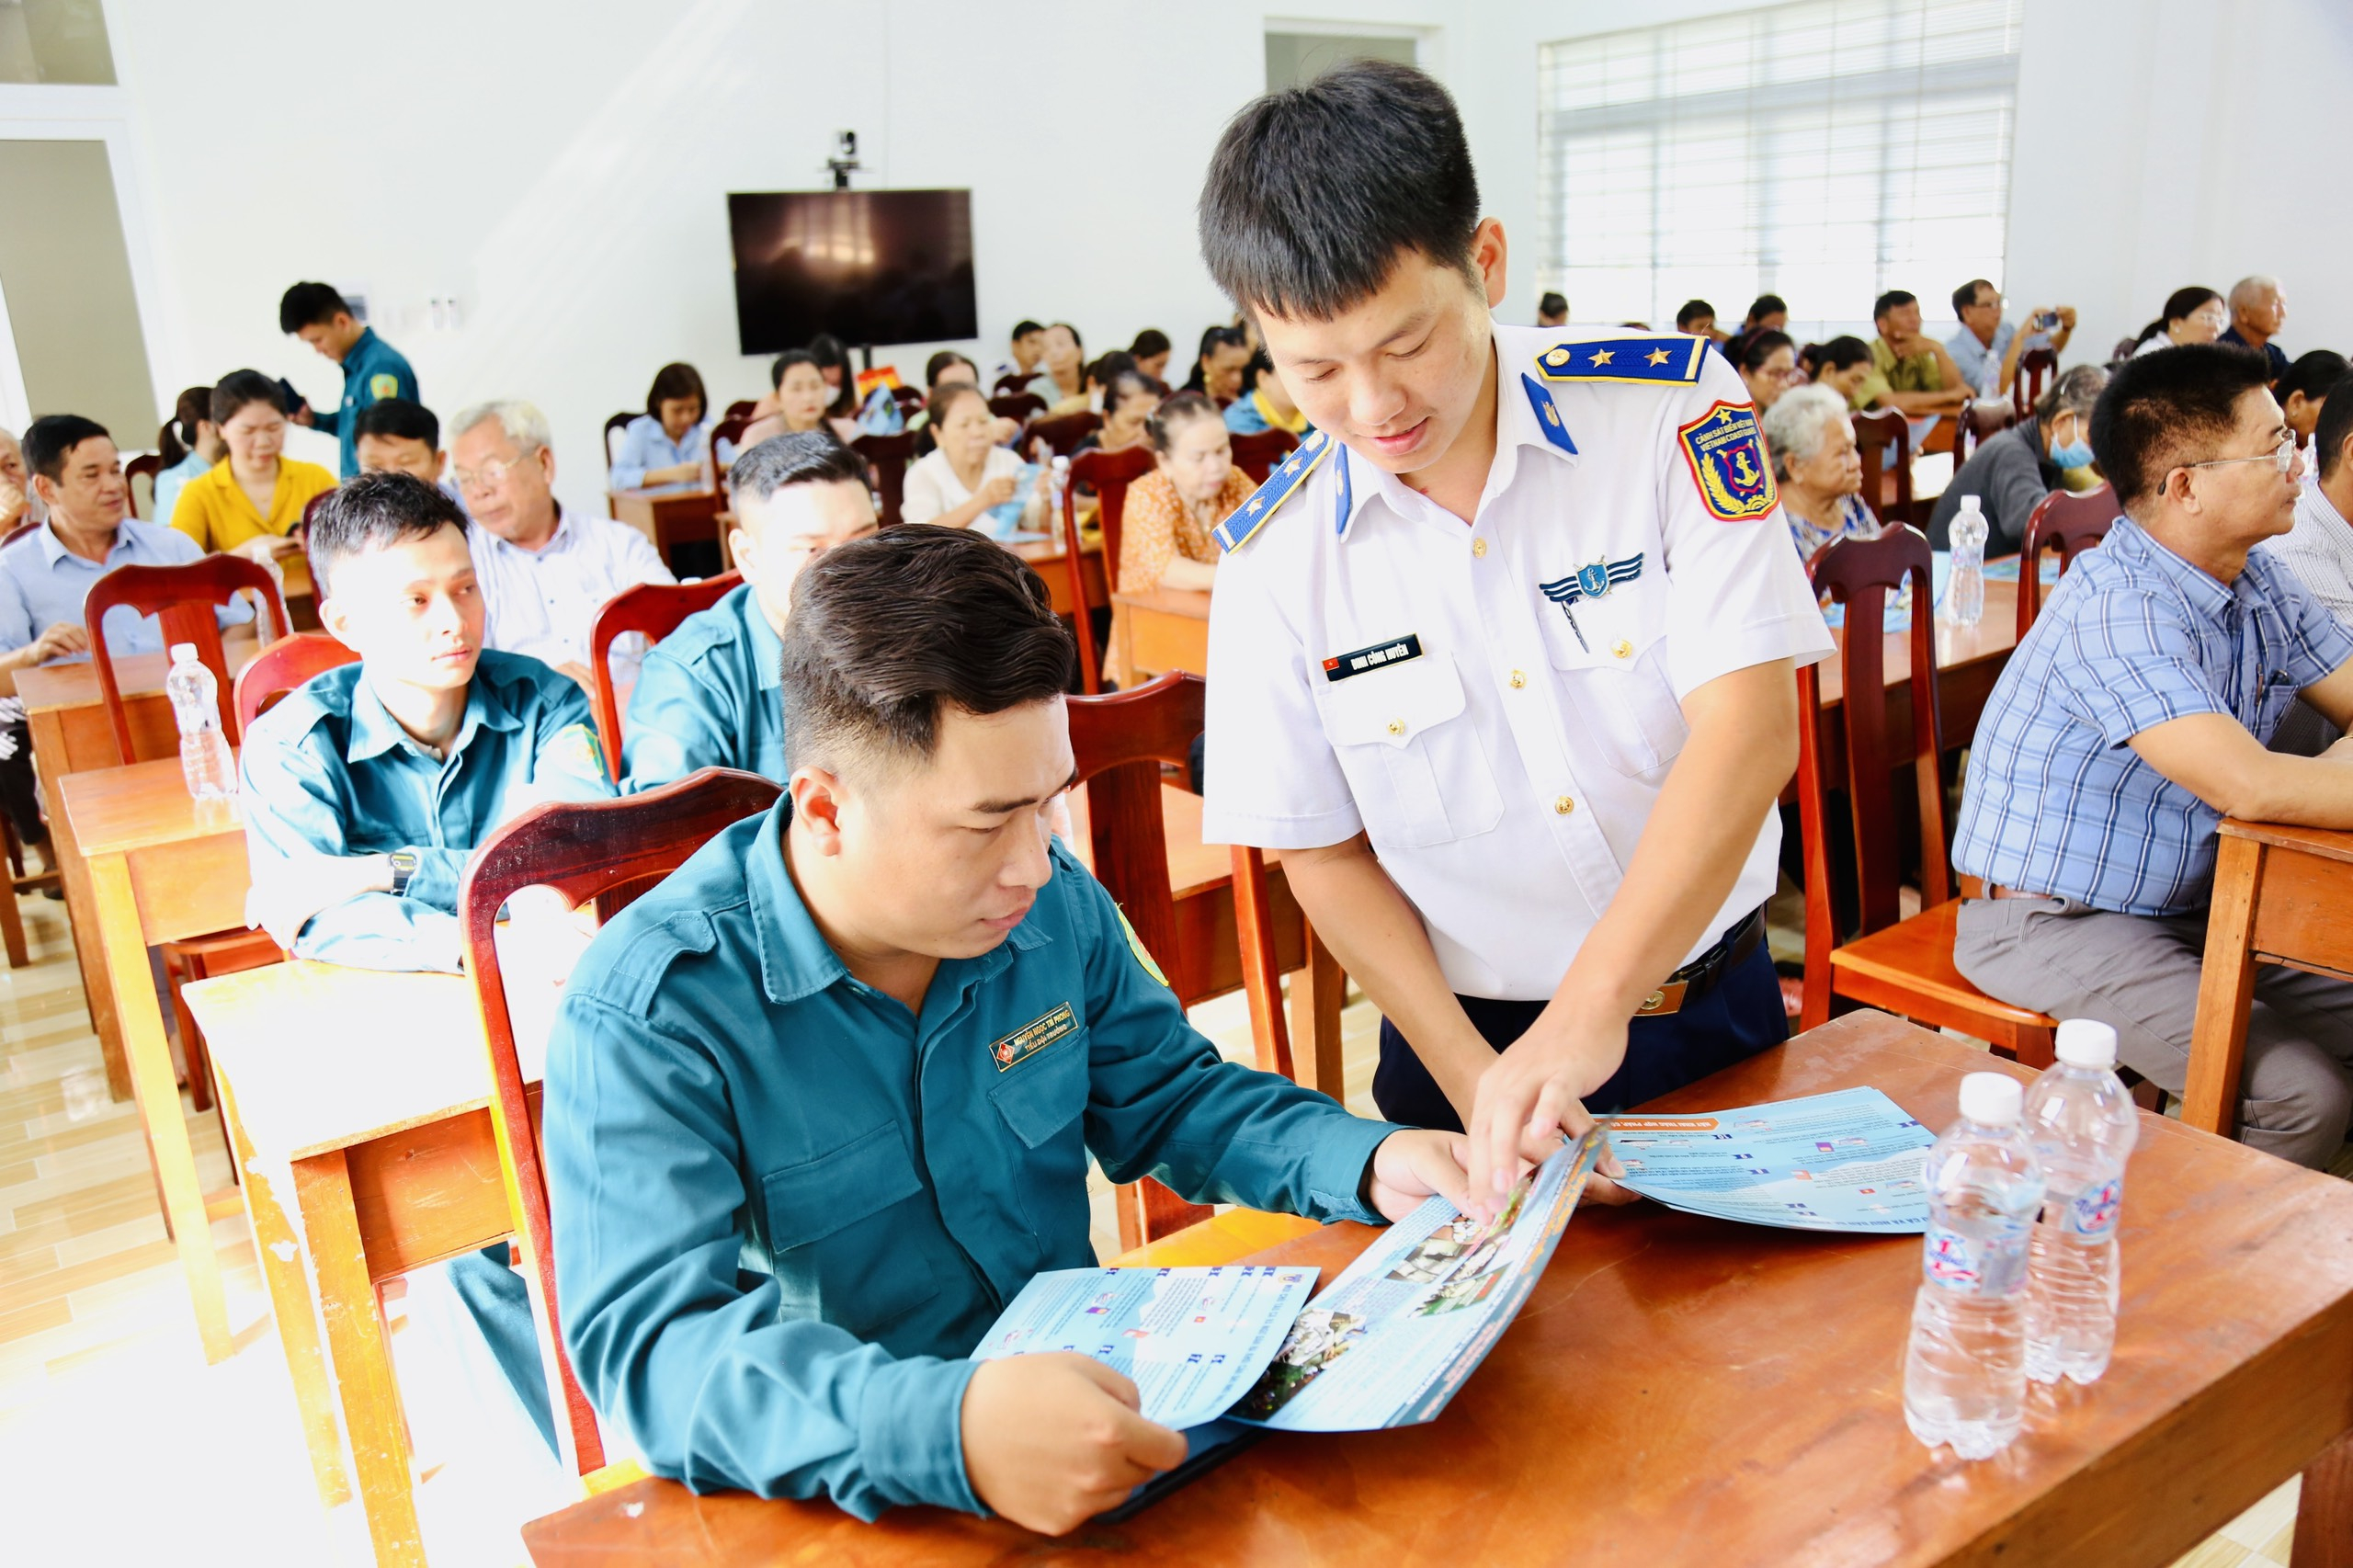 Cán bộ của Bộ Tư lệnh Vùng Cảnh sát biển 3, phát tờ rơi tuyên truyền tại hội nghị.